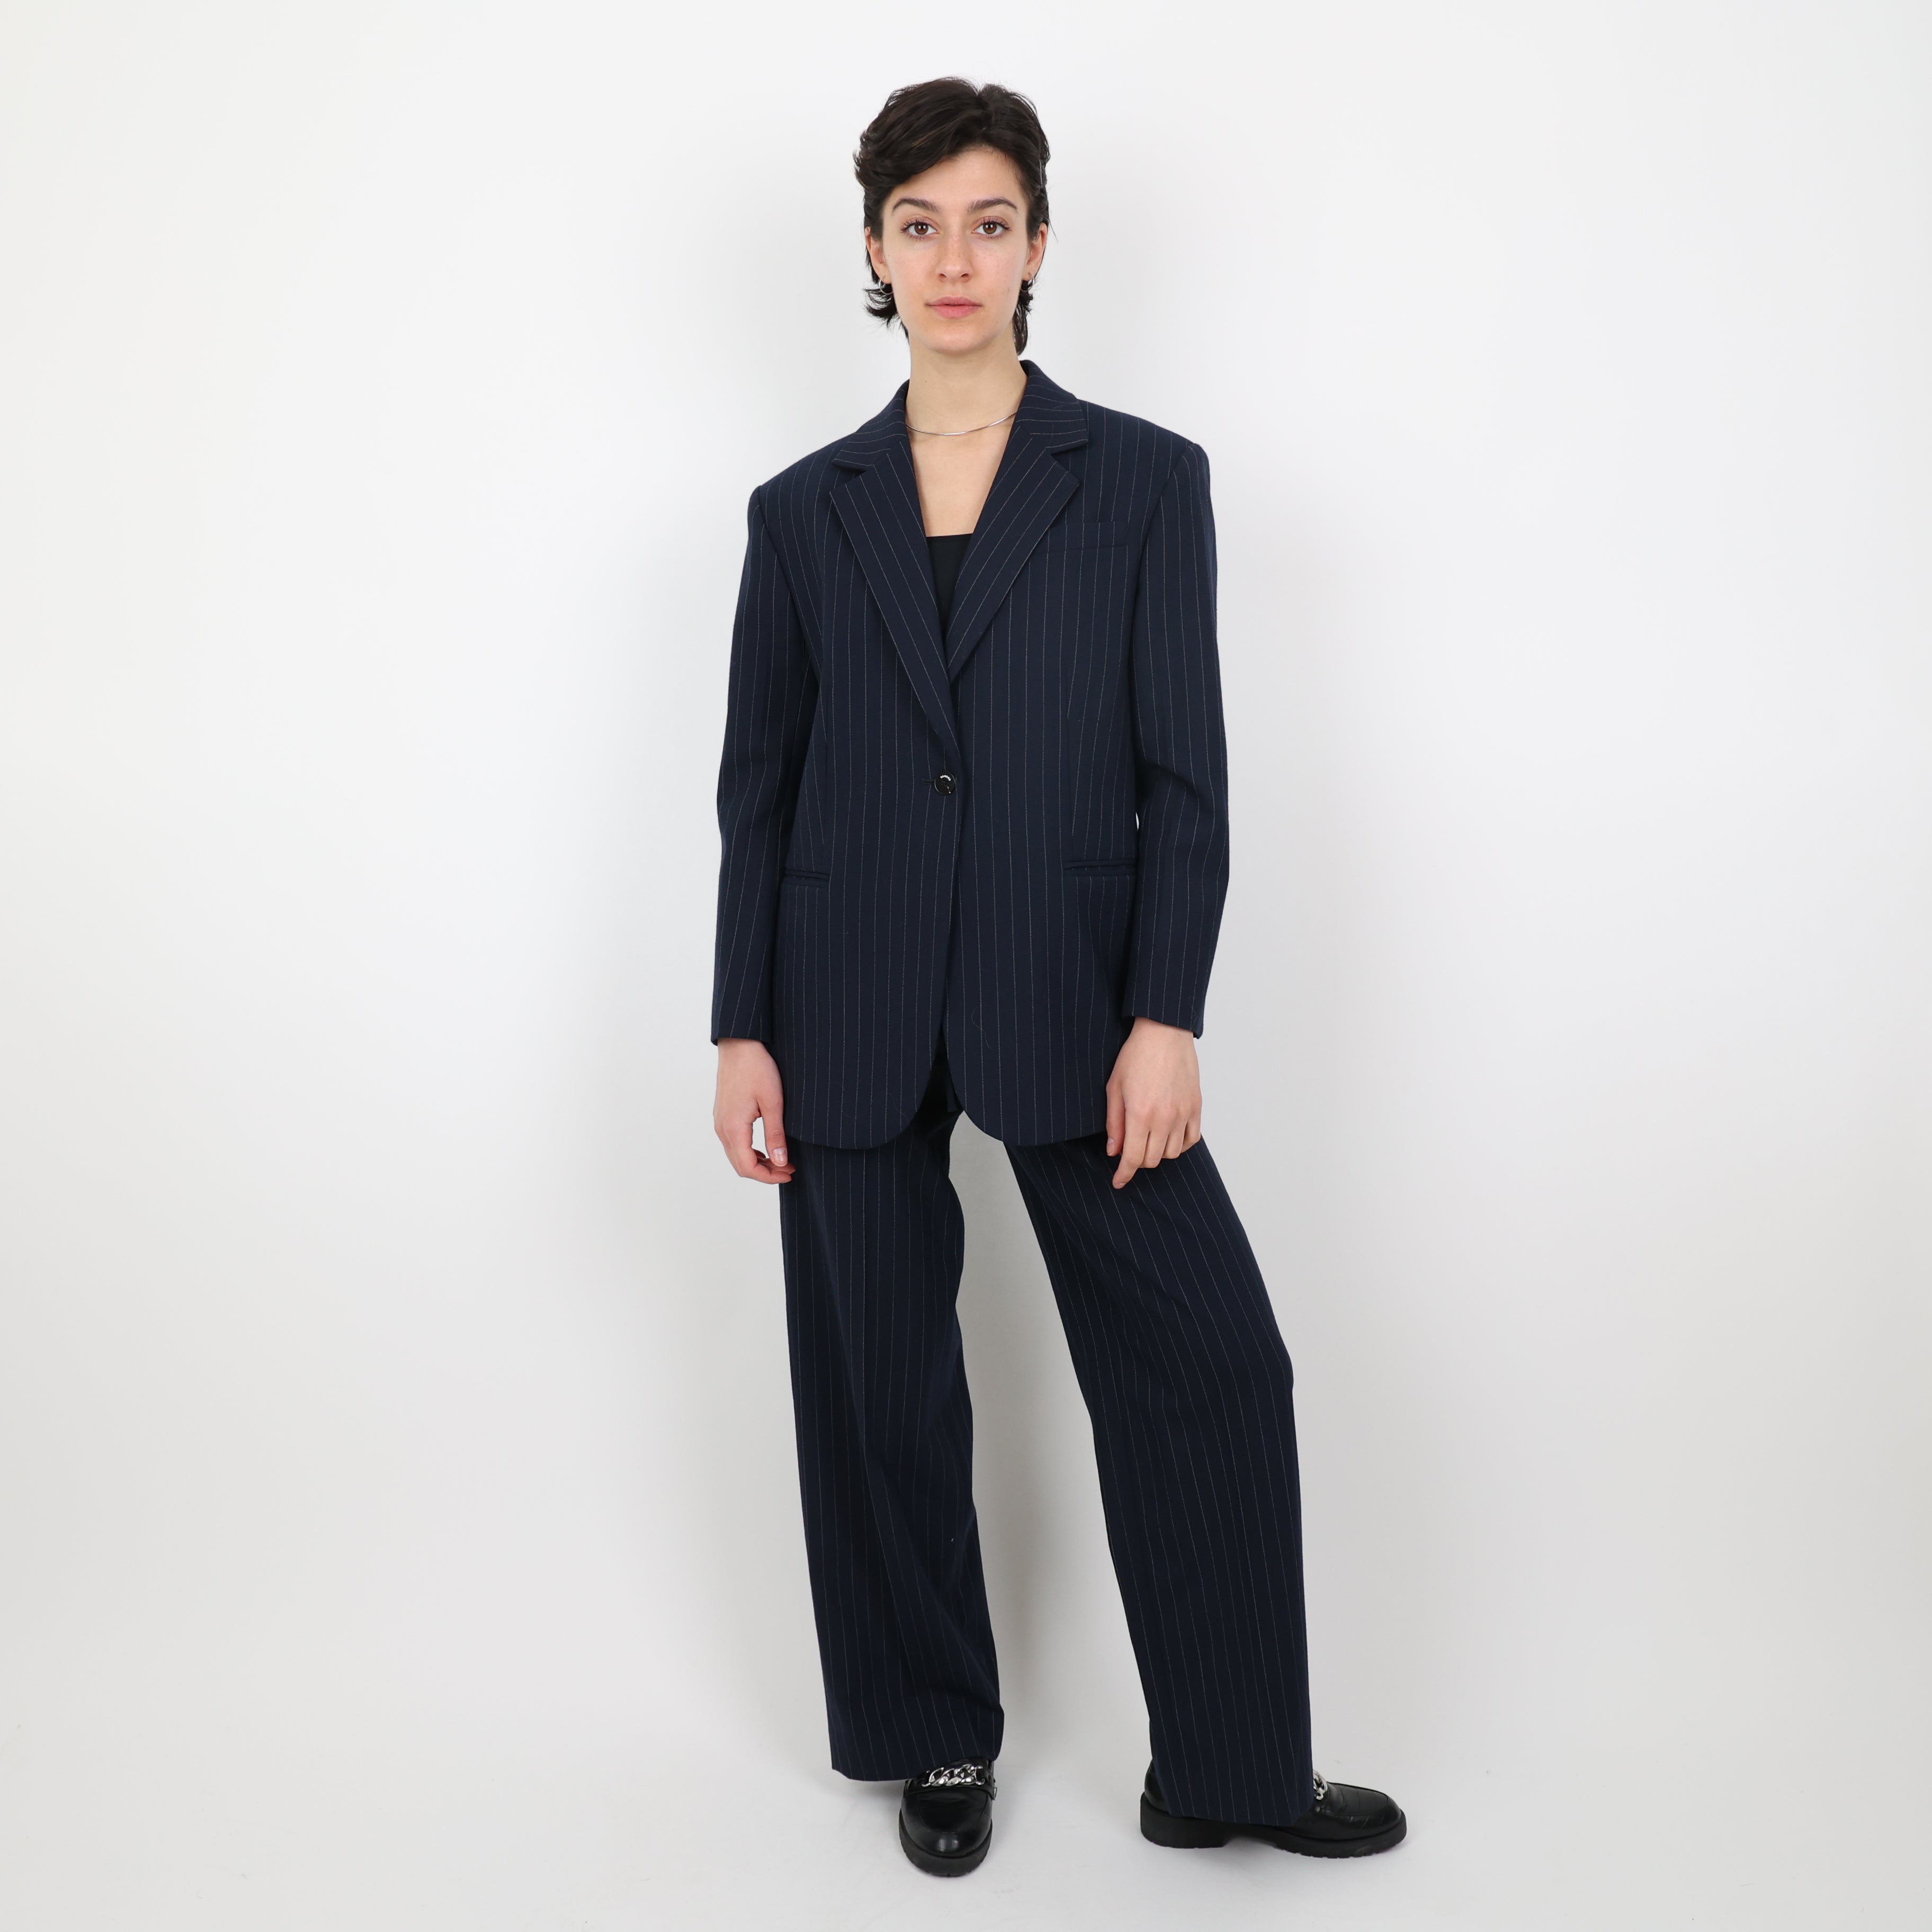 Suit, UK Size 6